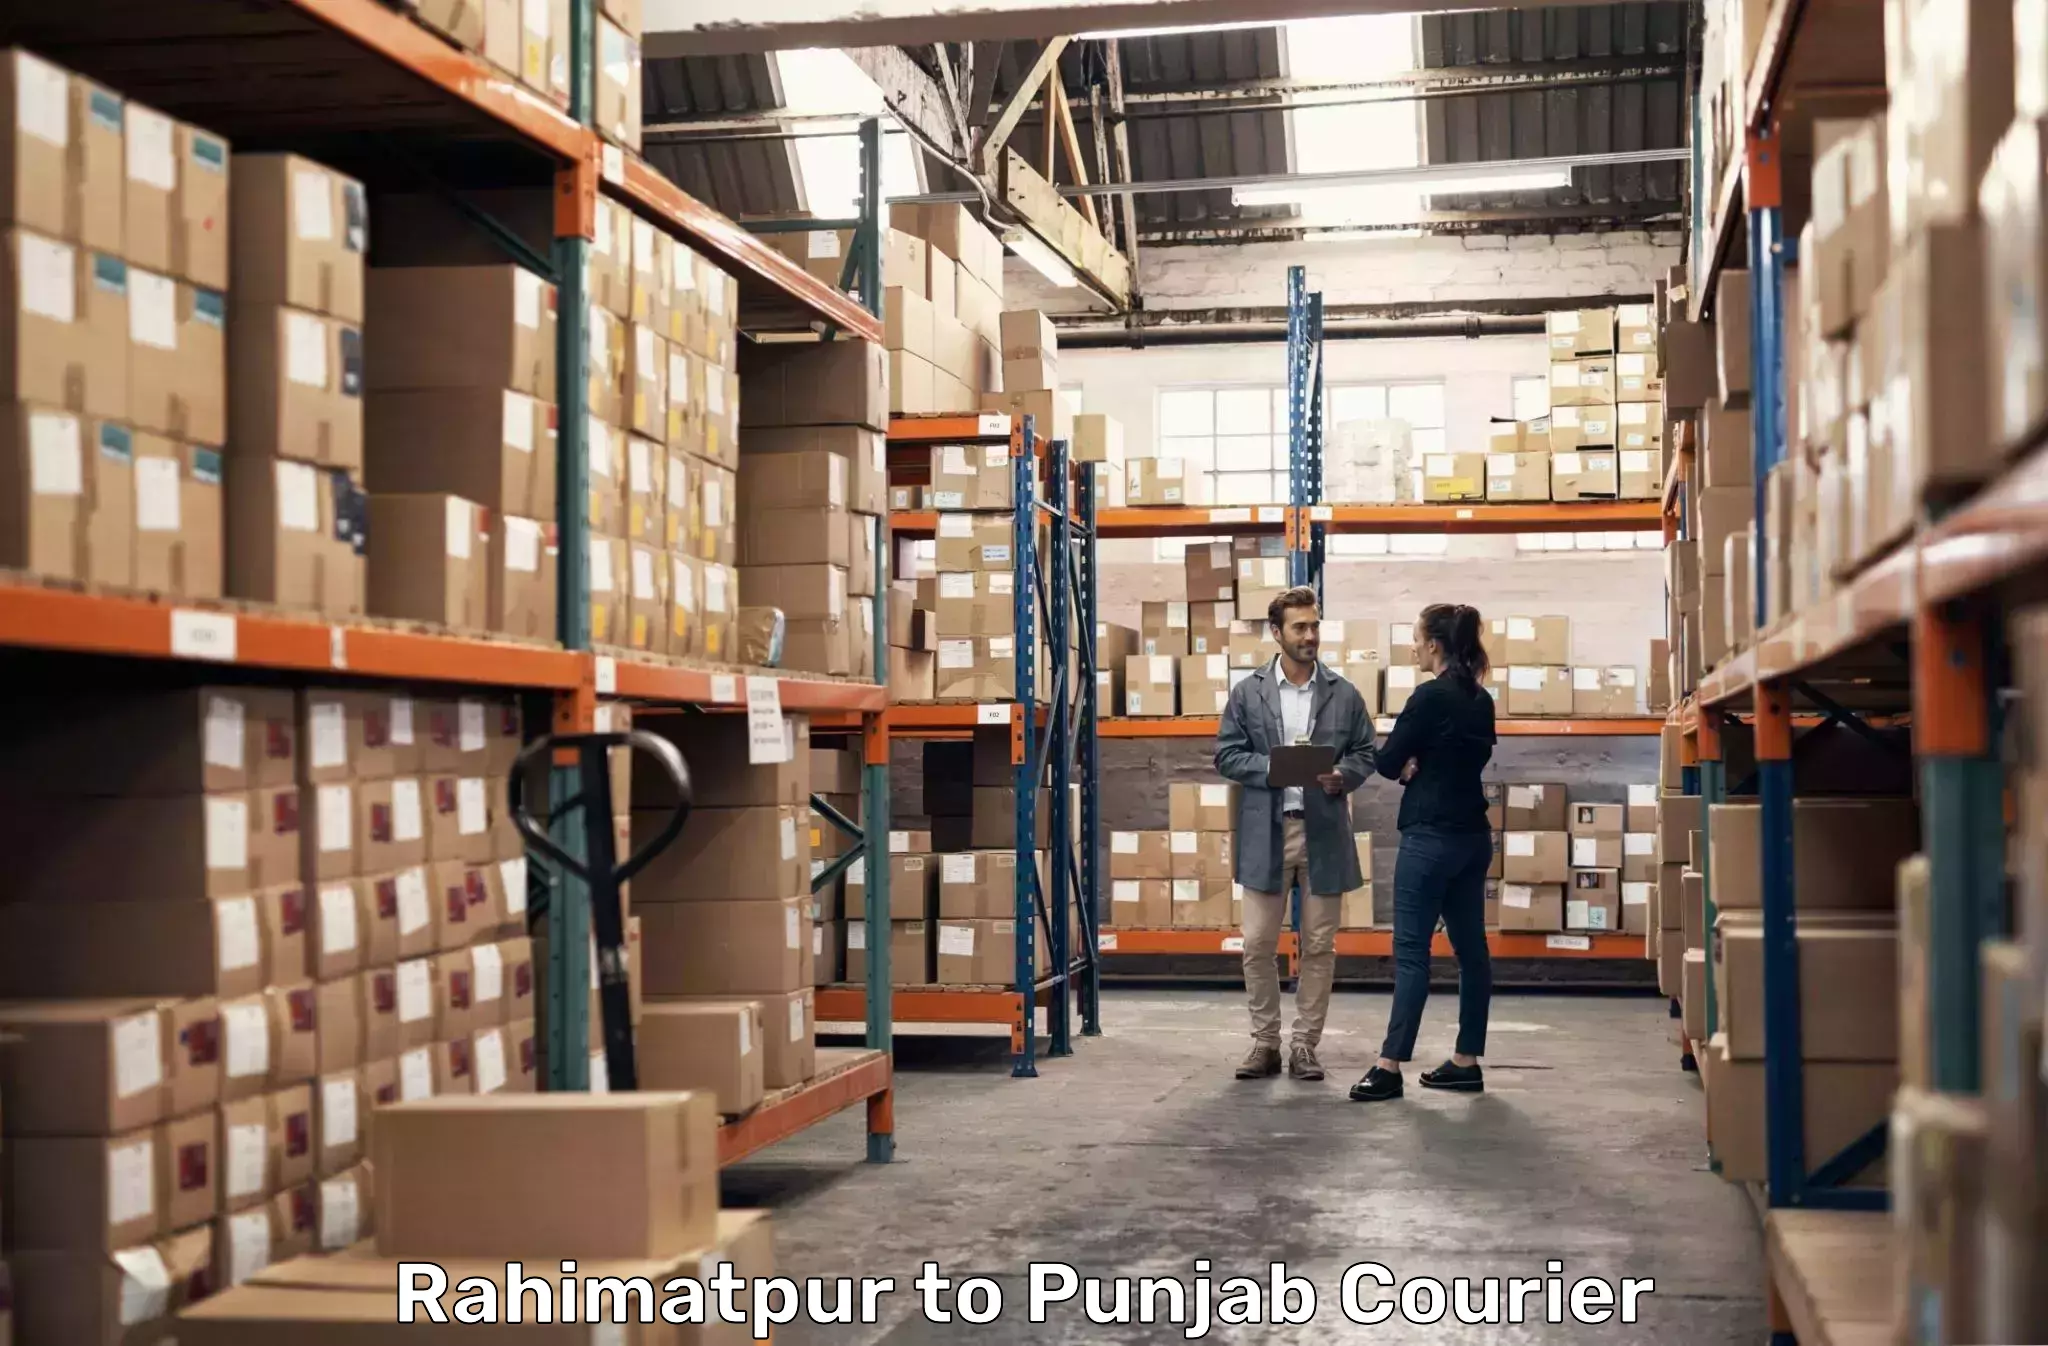 Courier service comparison Rahimatpur to Punjab